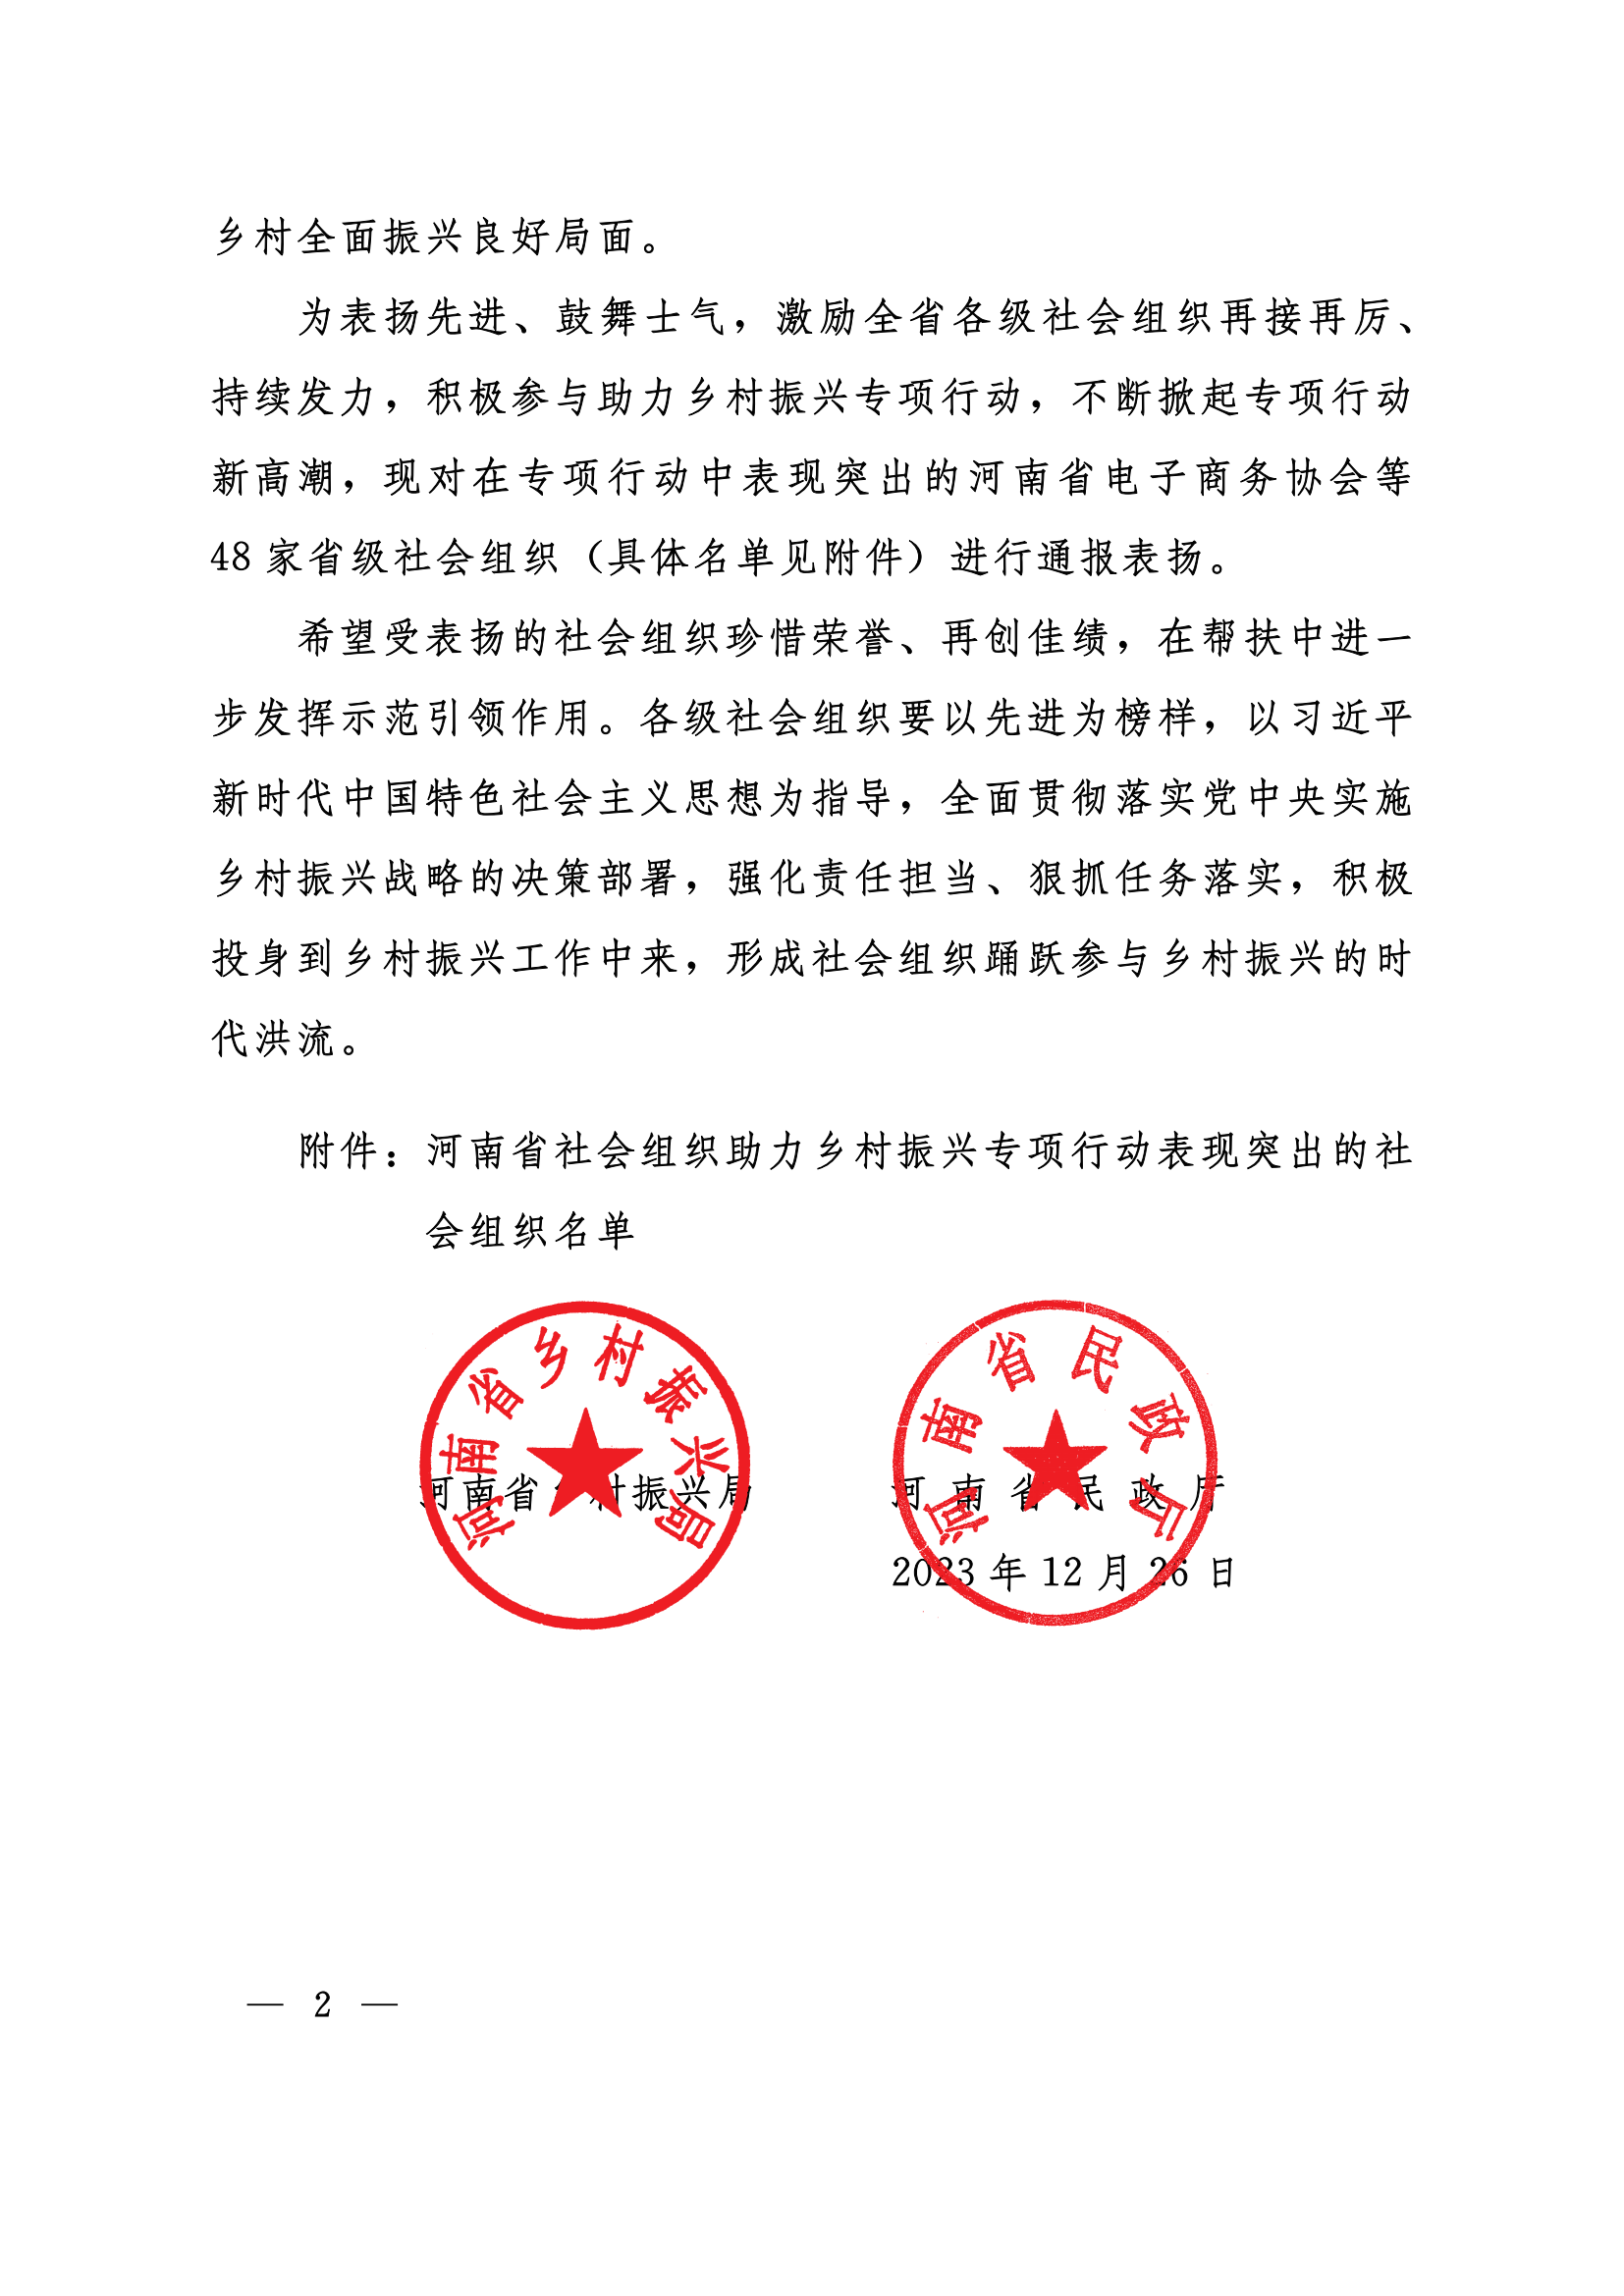 关于对河南省社会组织助力乡村振兴专项行动表现突出的社会组织进行表扬的通报_01.png